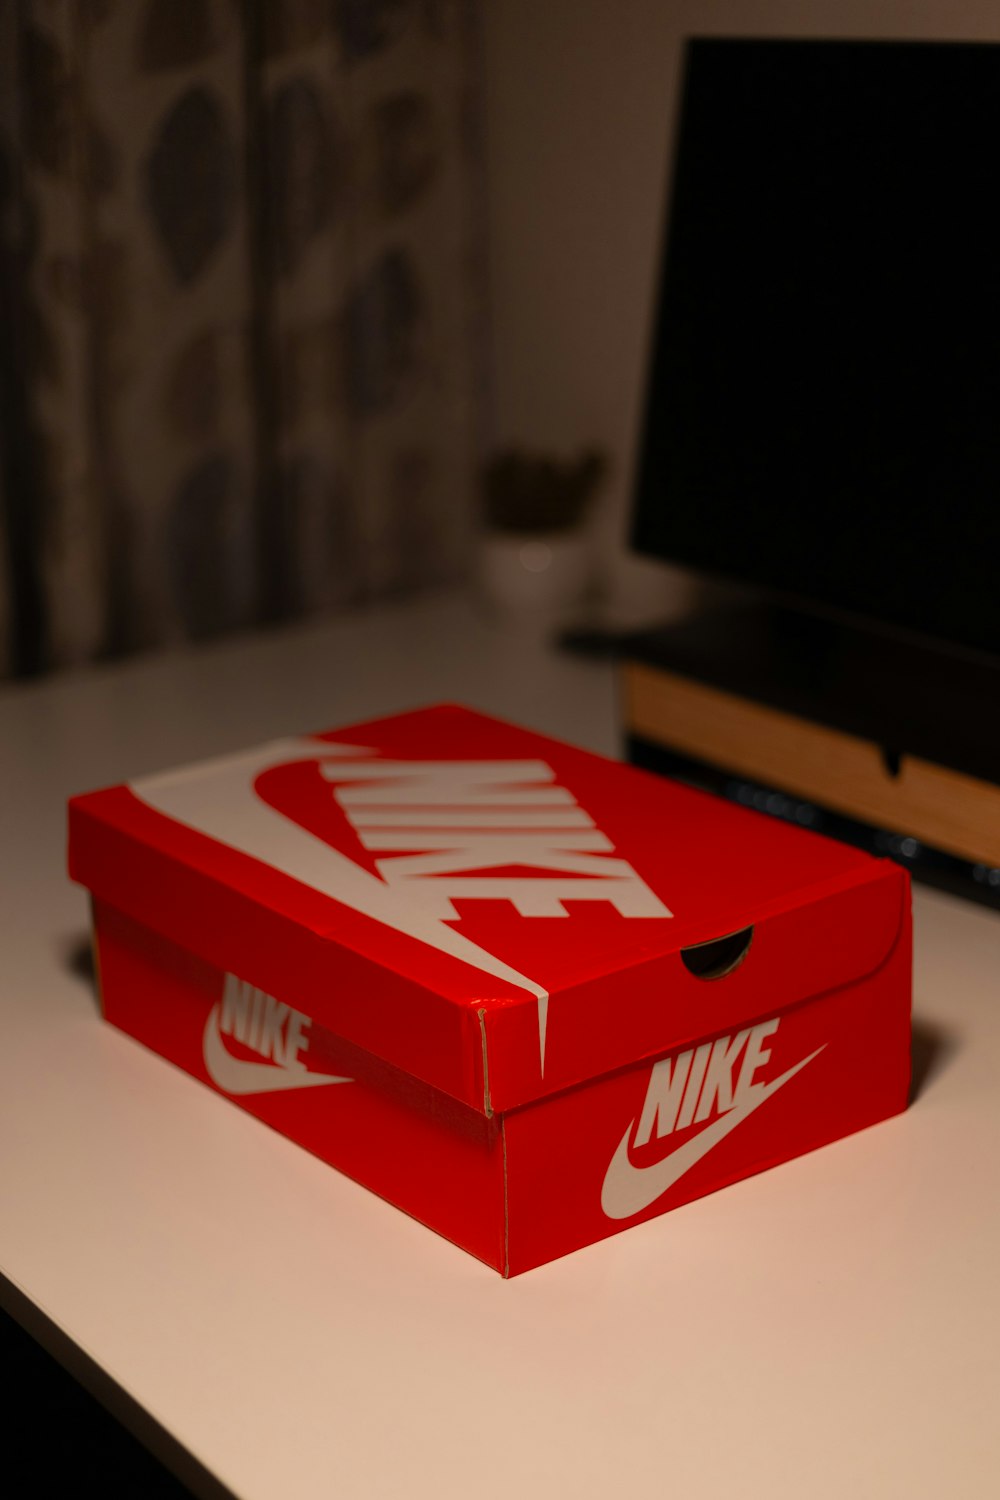 Una caja roja de Nike encima de una mesa